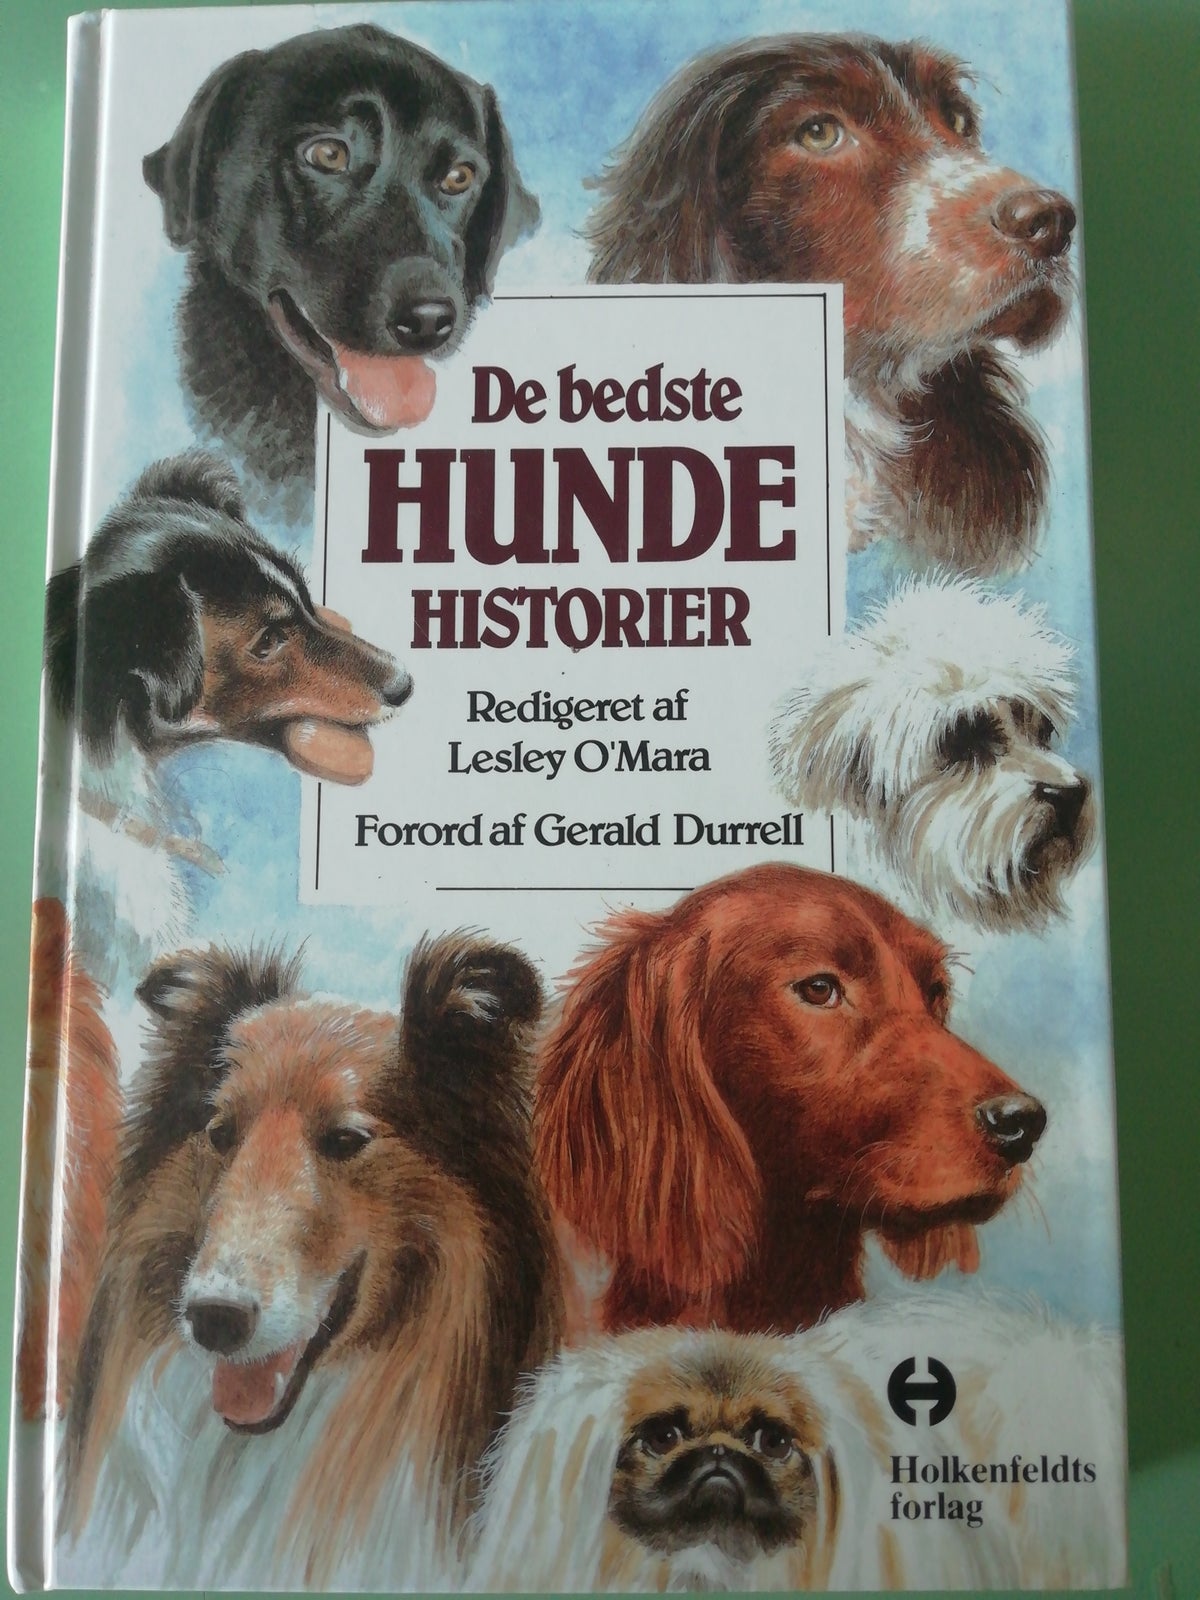 De bedste hunde historier, af Lesley Omara, emne: dyr – dba.dk – Køb og af Nyt og Brugt